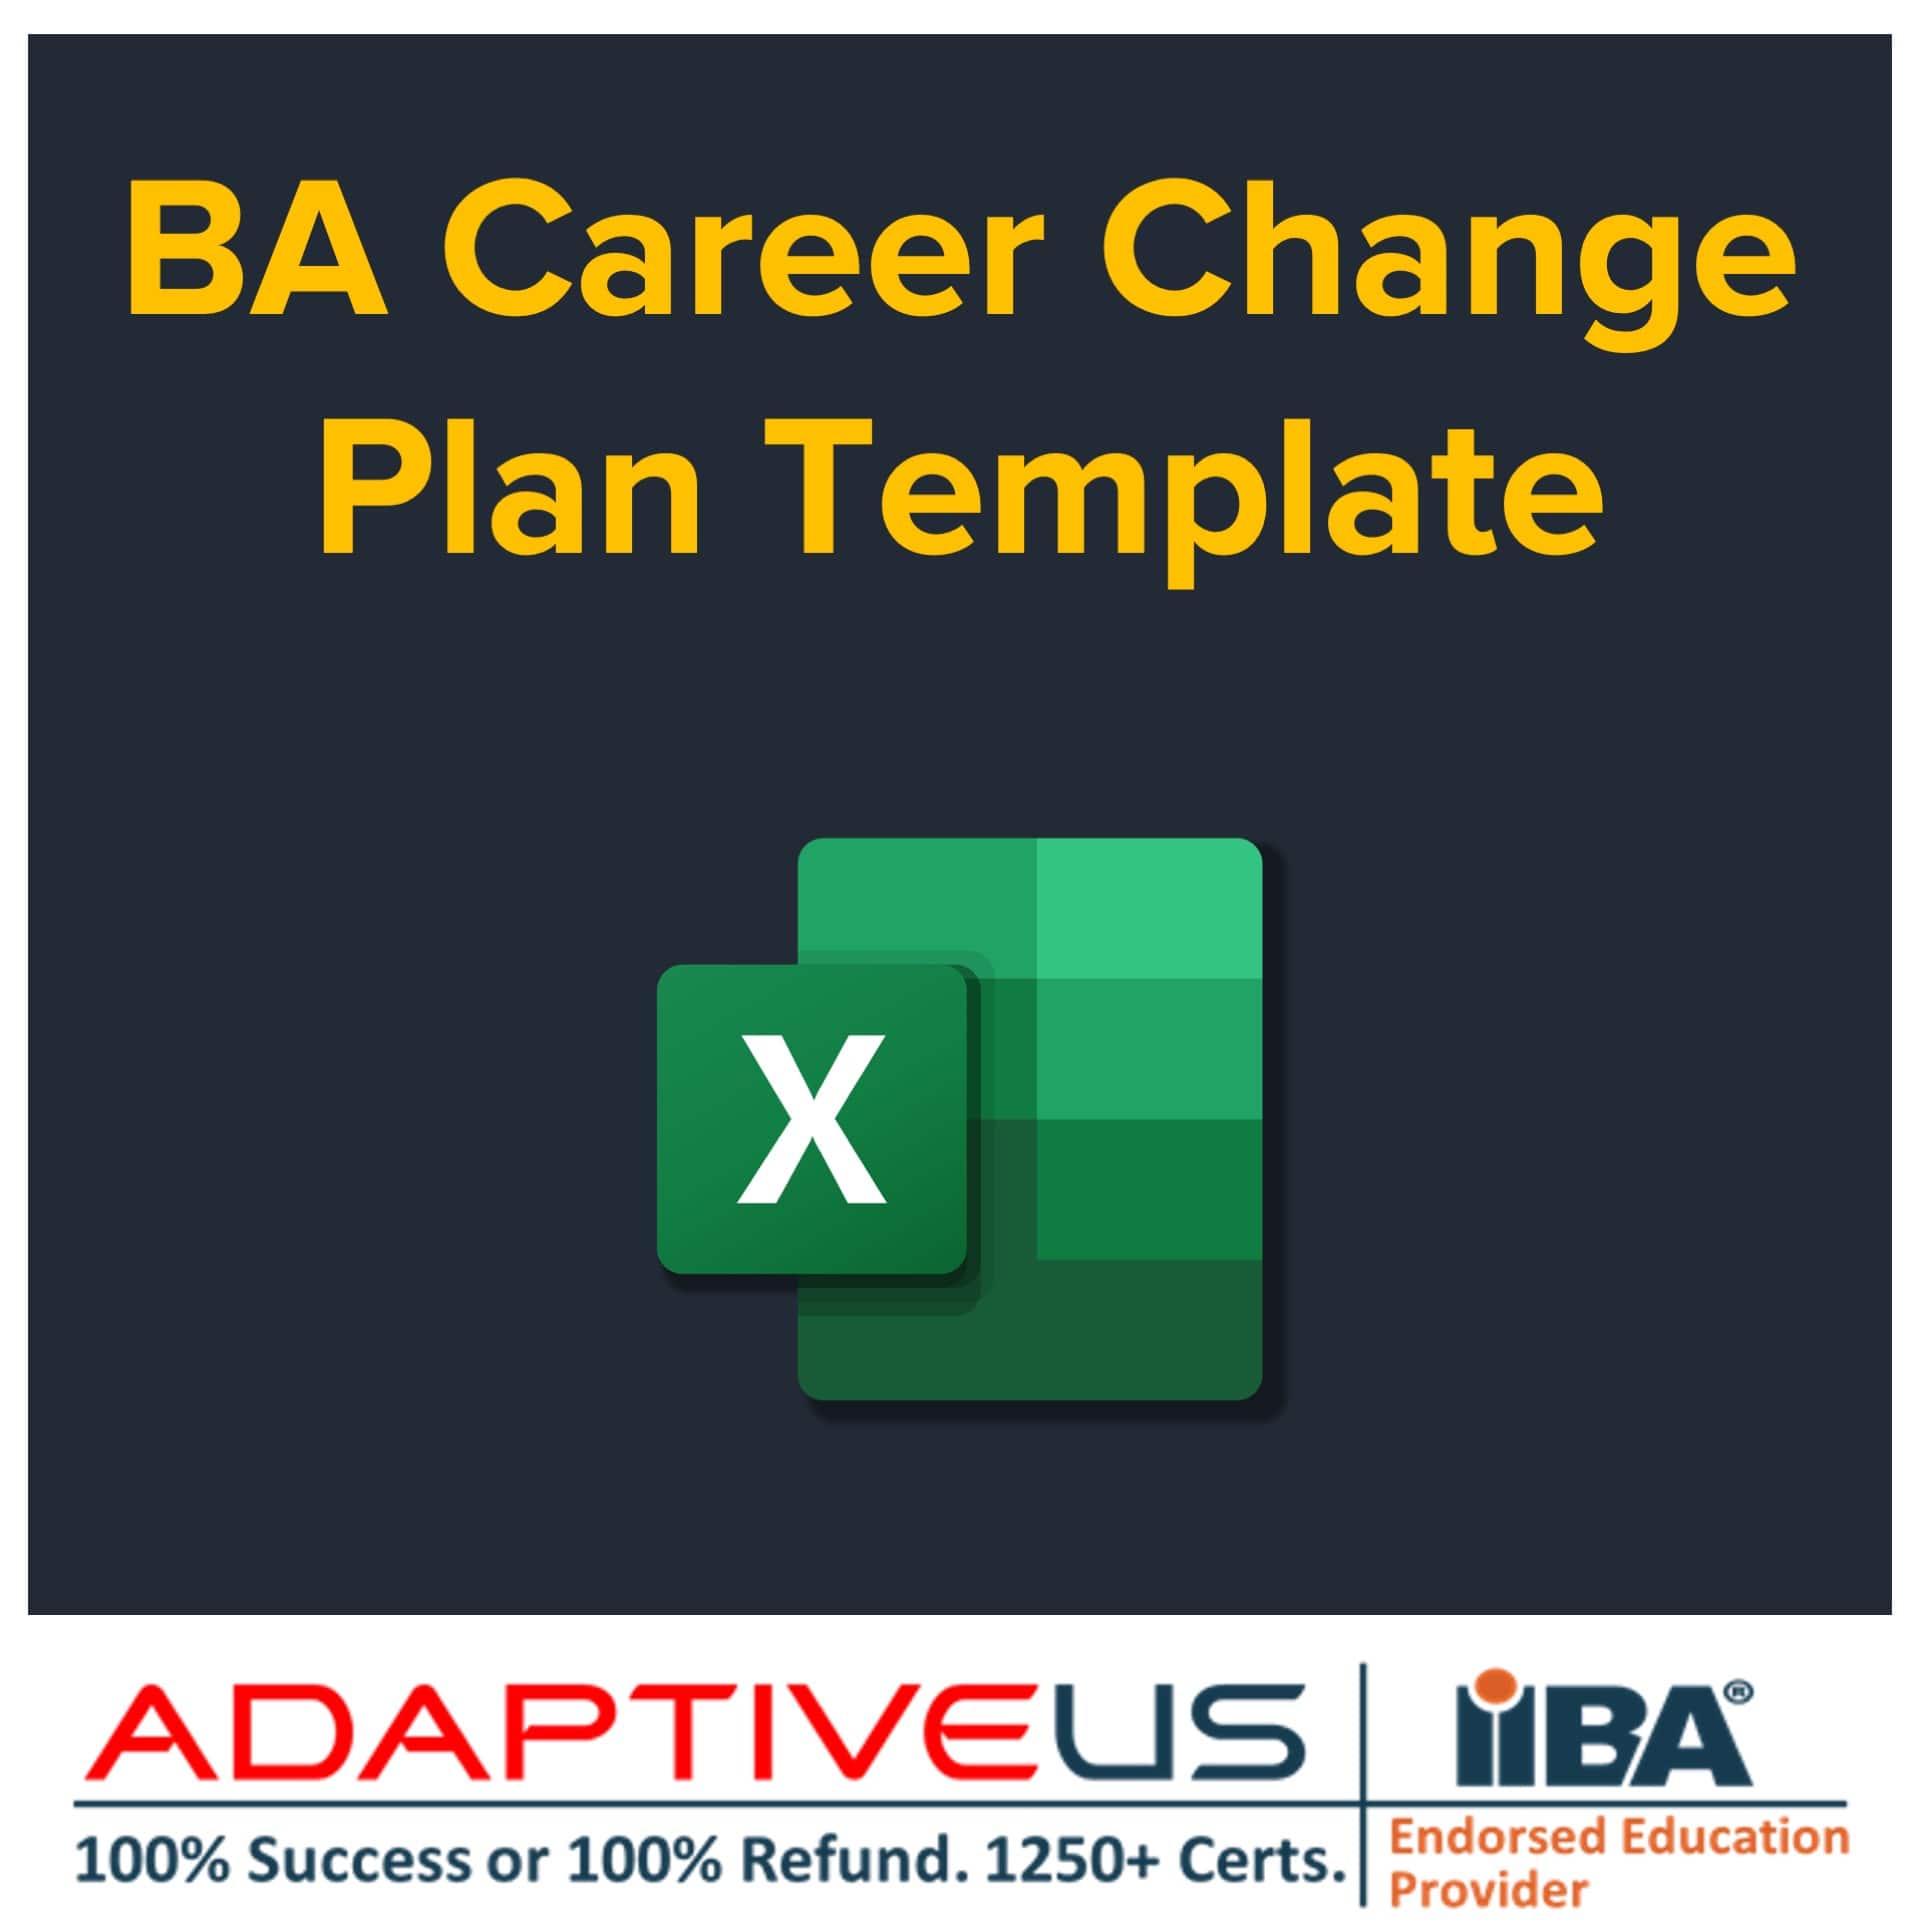 BA Career Change Plan